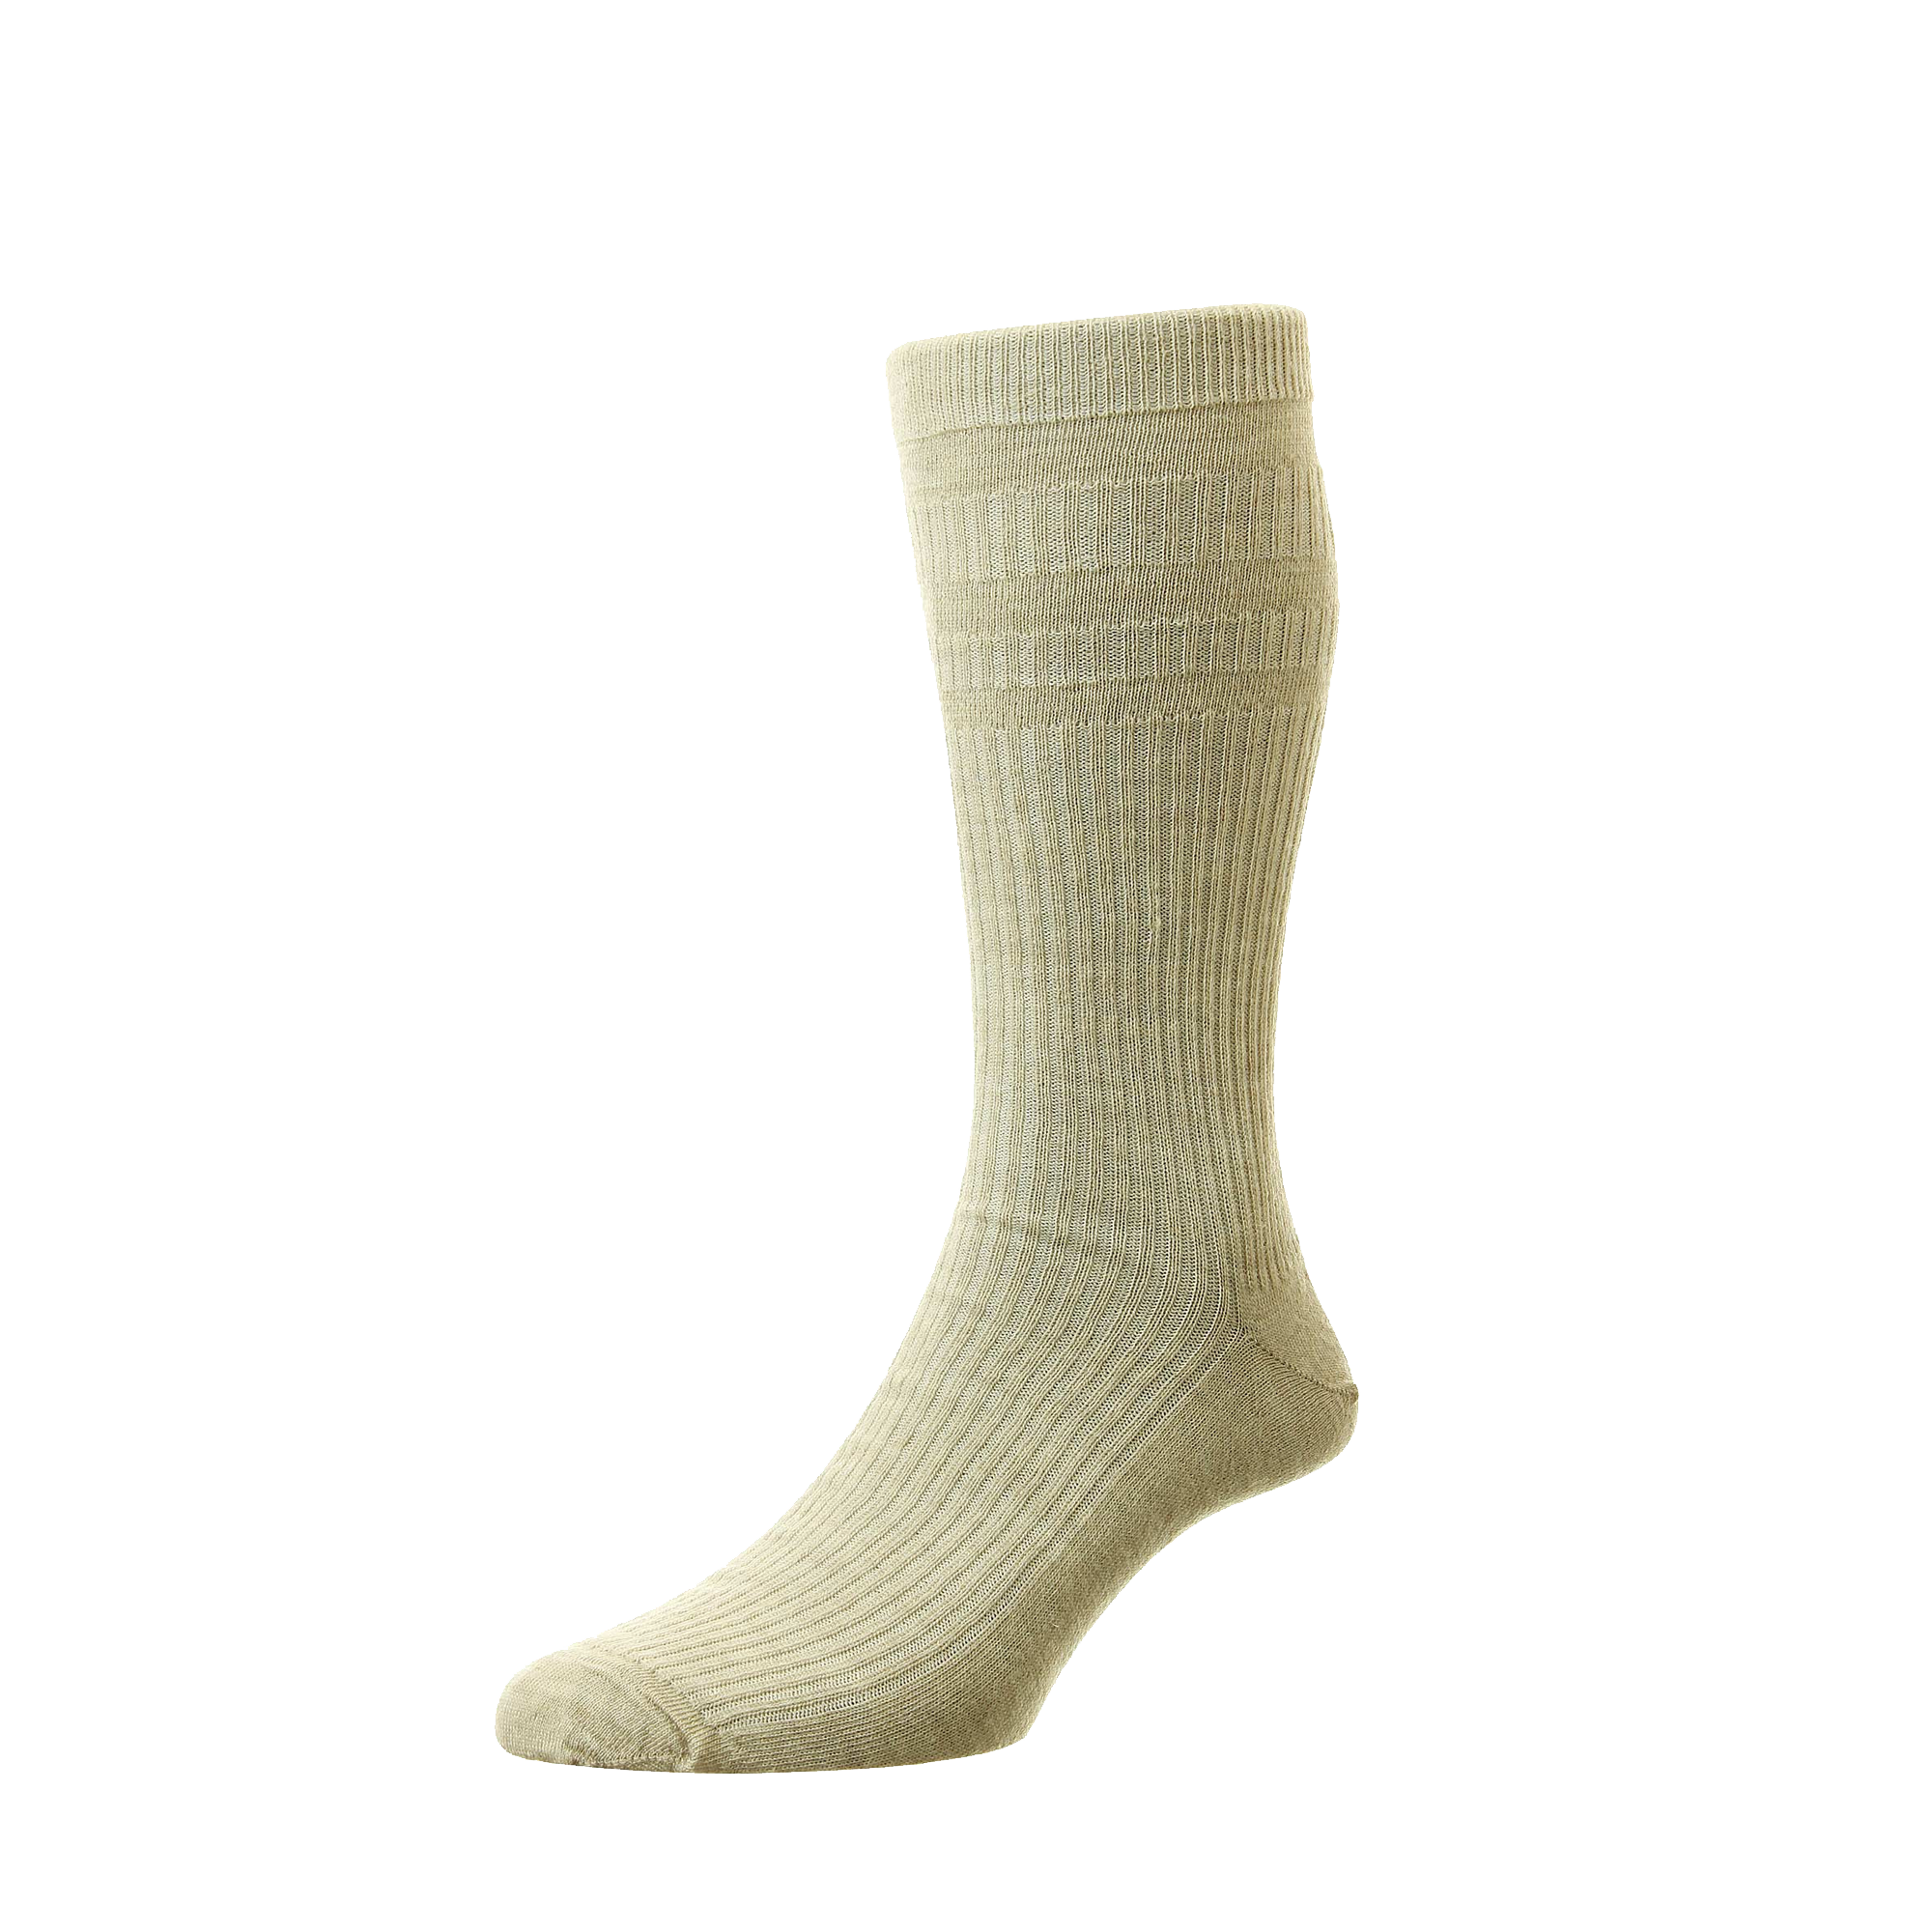 HJ Extra Wide Softop Socks - HJ191H - Cotton - Oatmeal